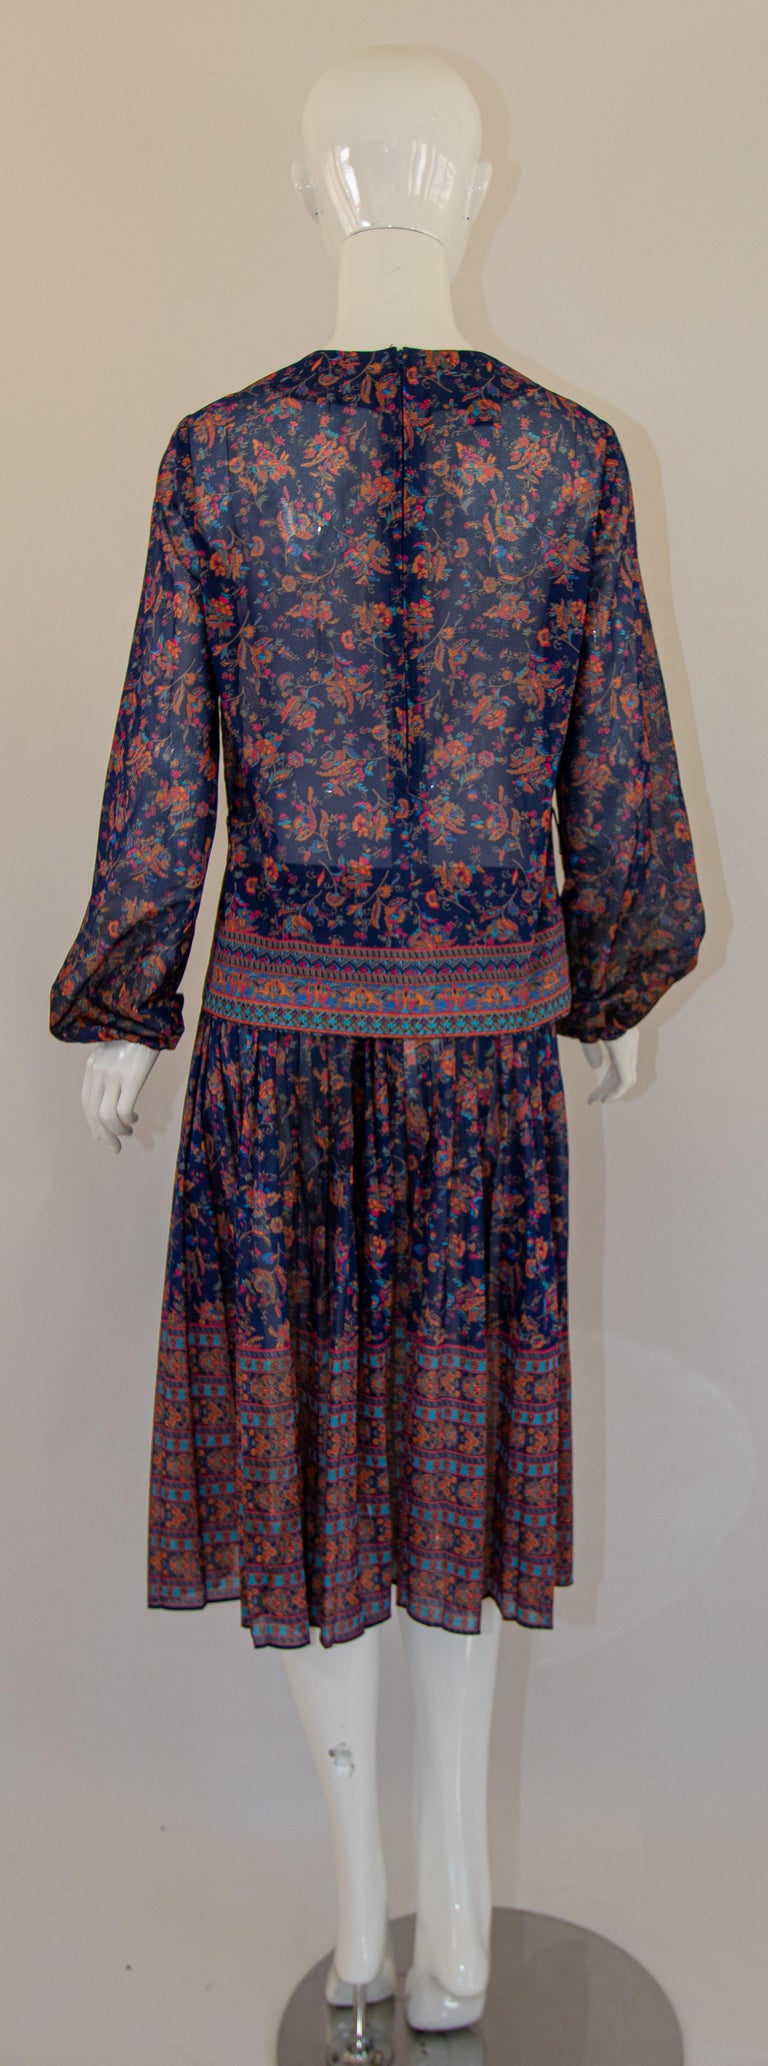 1970s Vintage Bohemian Floral Printed Dress Miss Magnin at I. Magnin For Sale 6